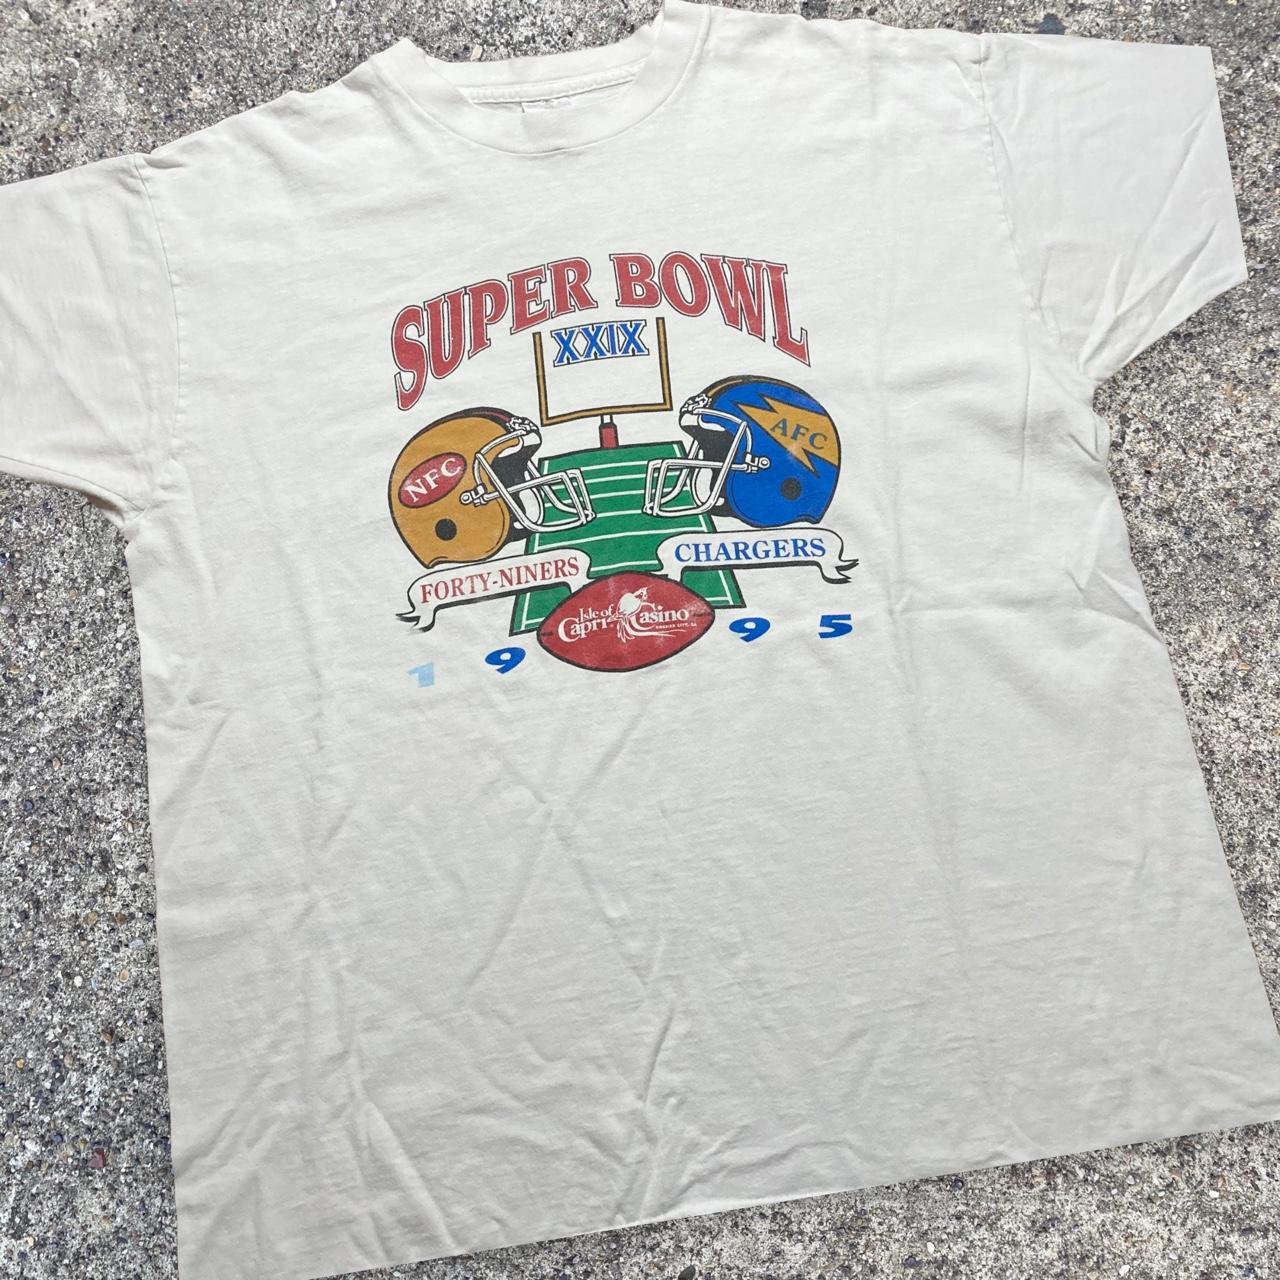 Vintage 1995 Chargers vs 49ers Super Bowl NFL Shirt Unisex